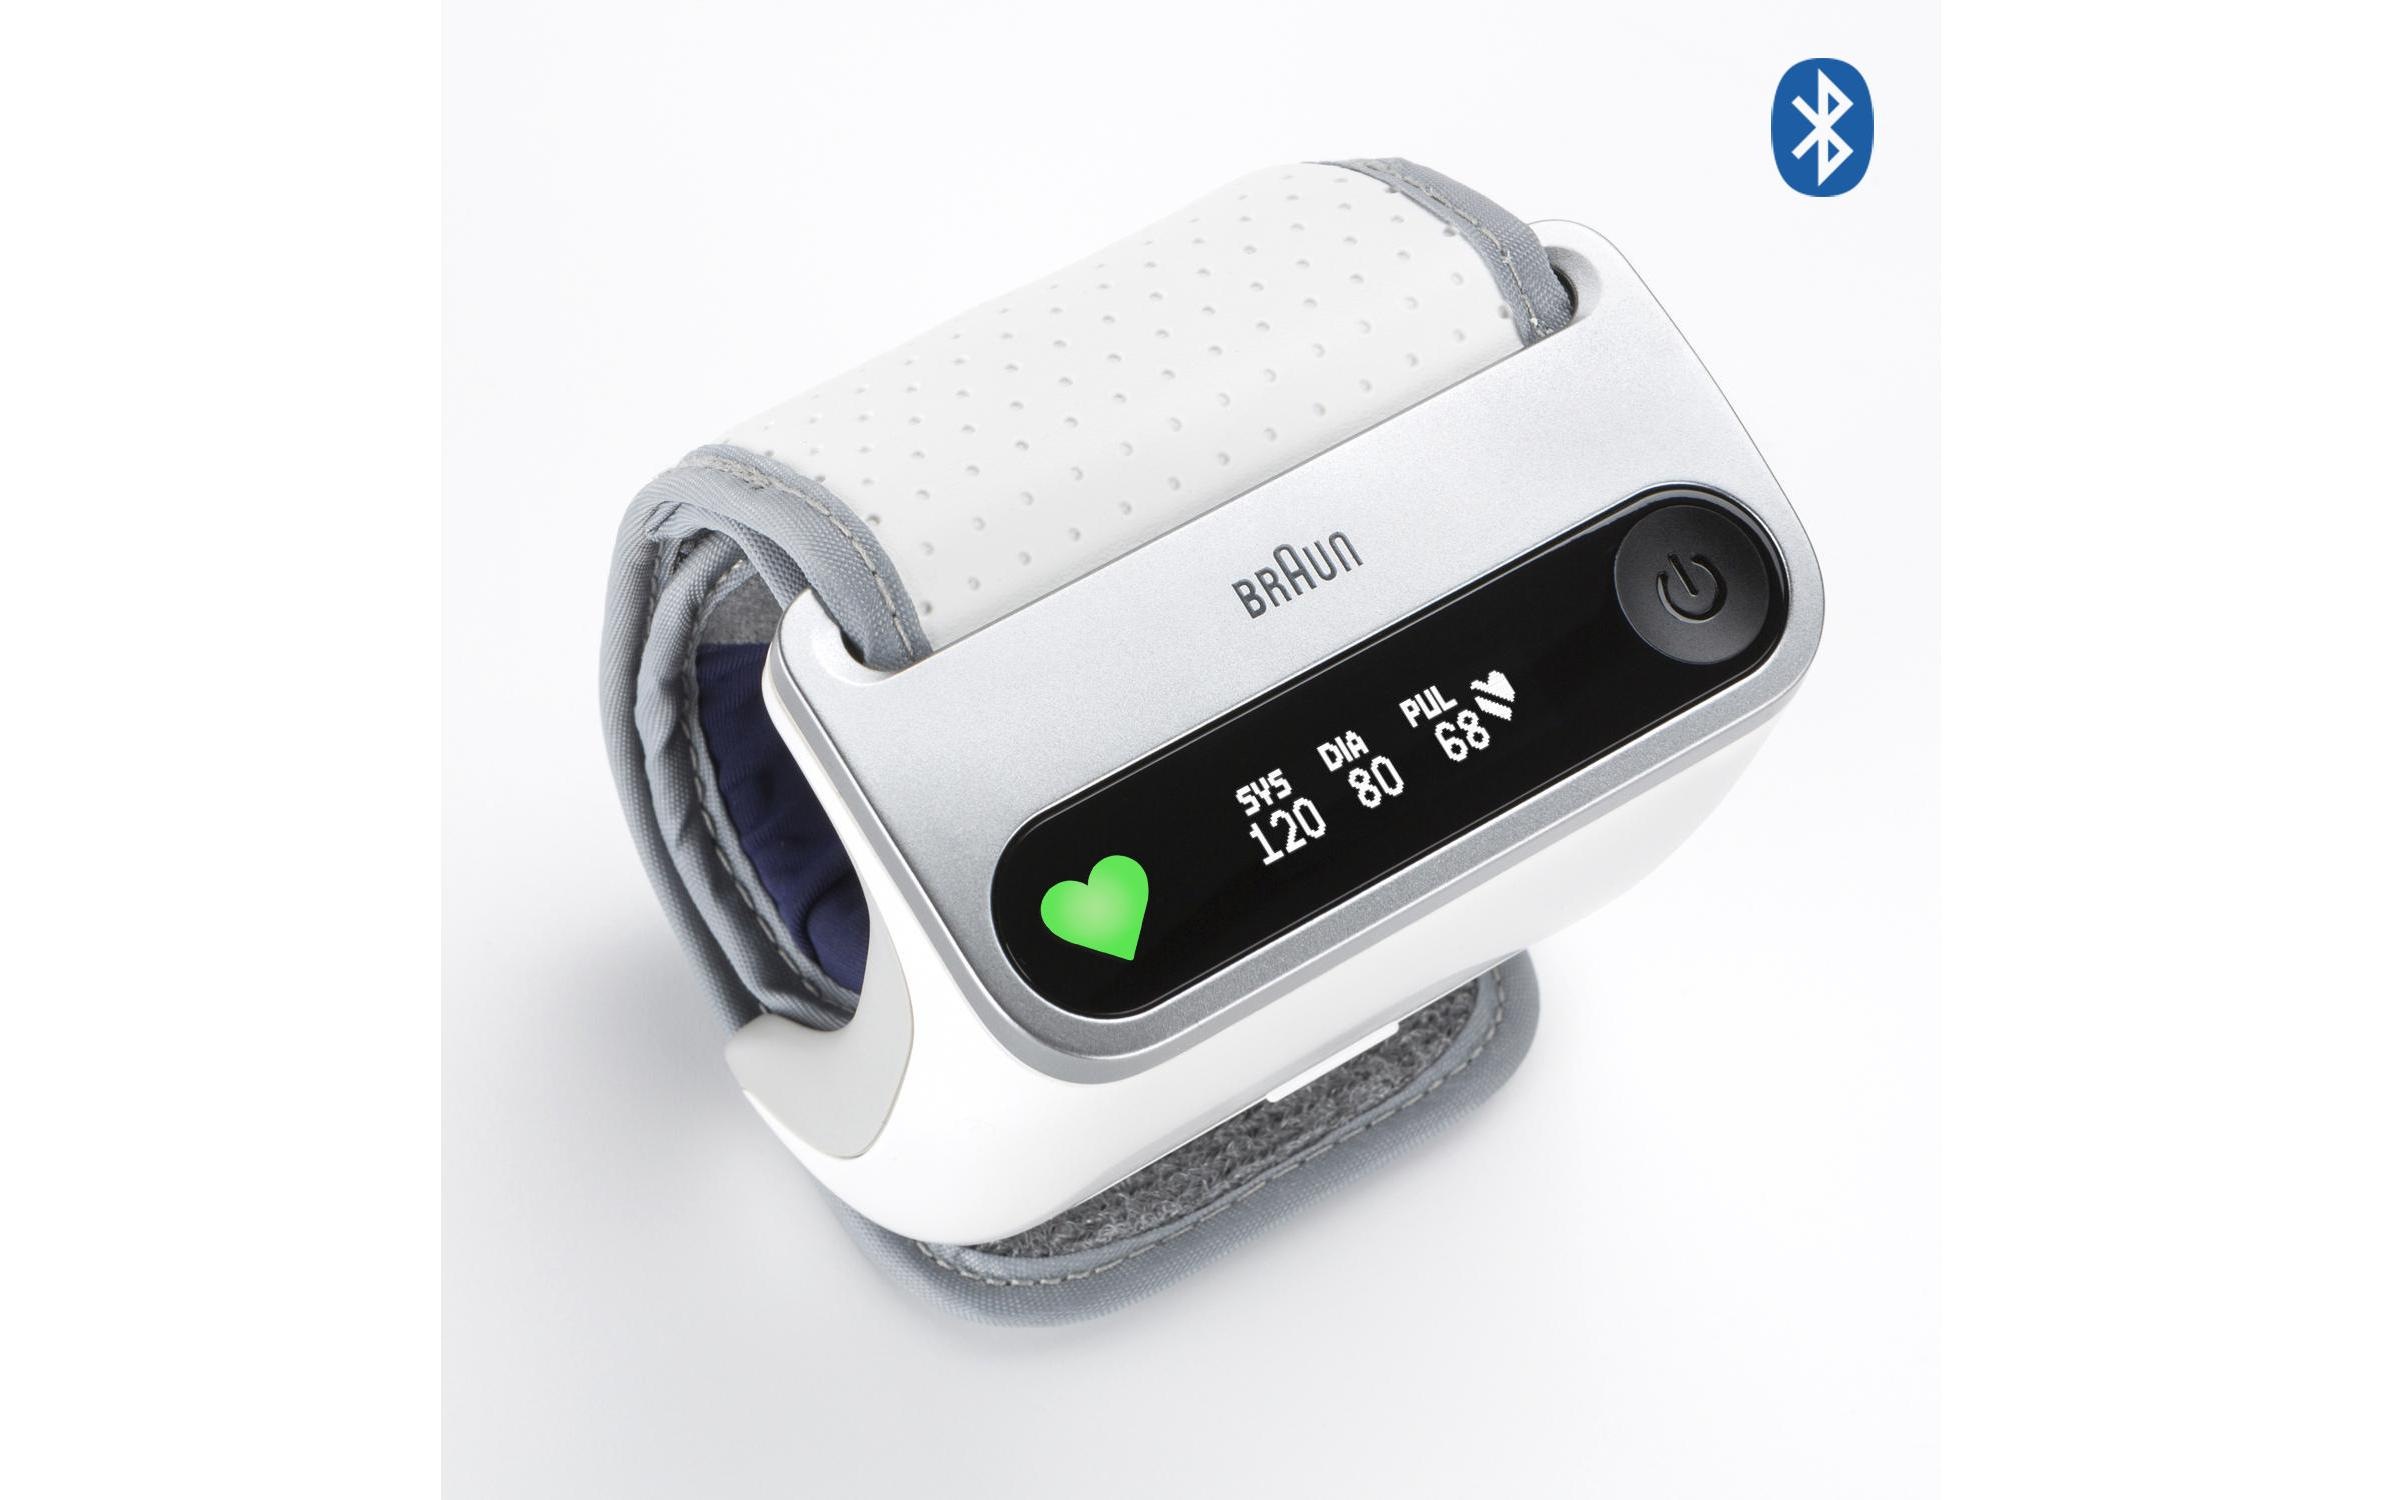 Braun Handgelenk-Blutdruckmessgerät »iCheck 7«, Abschaltautomatik, Arrhythmie-Erkennung, Messergebnis-Einstufung